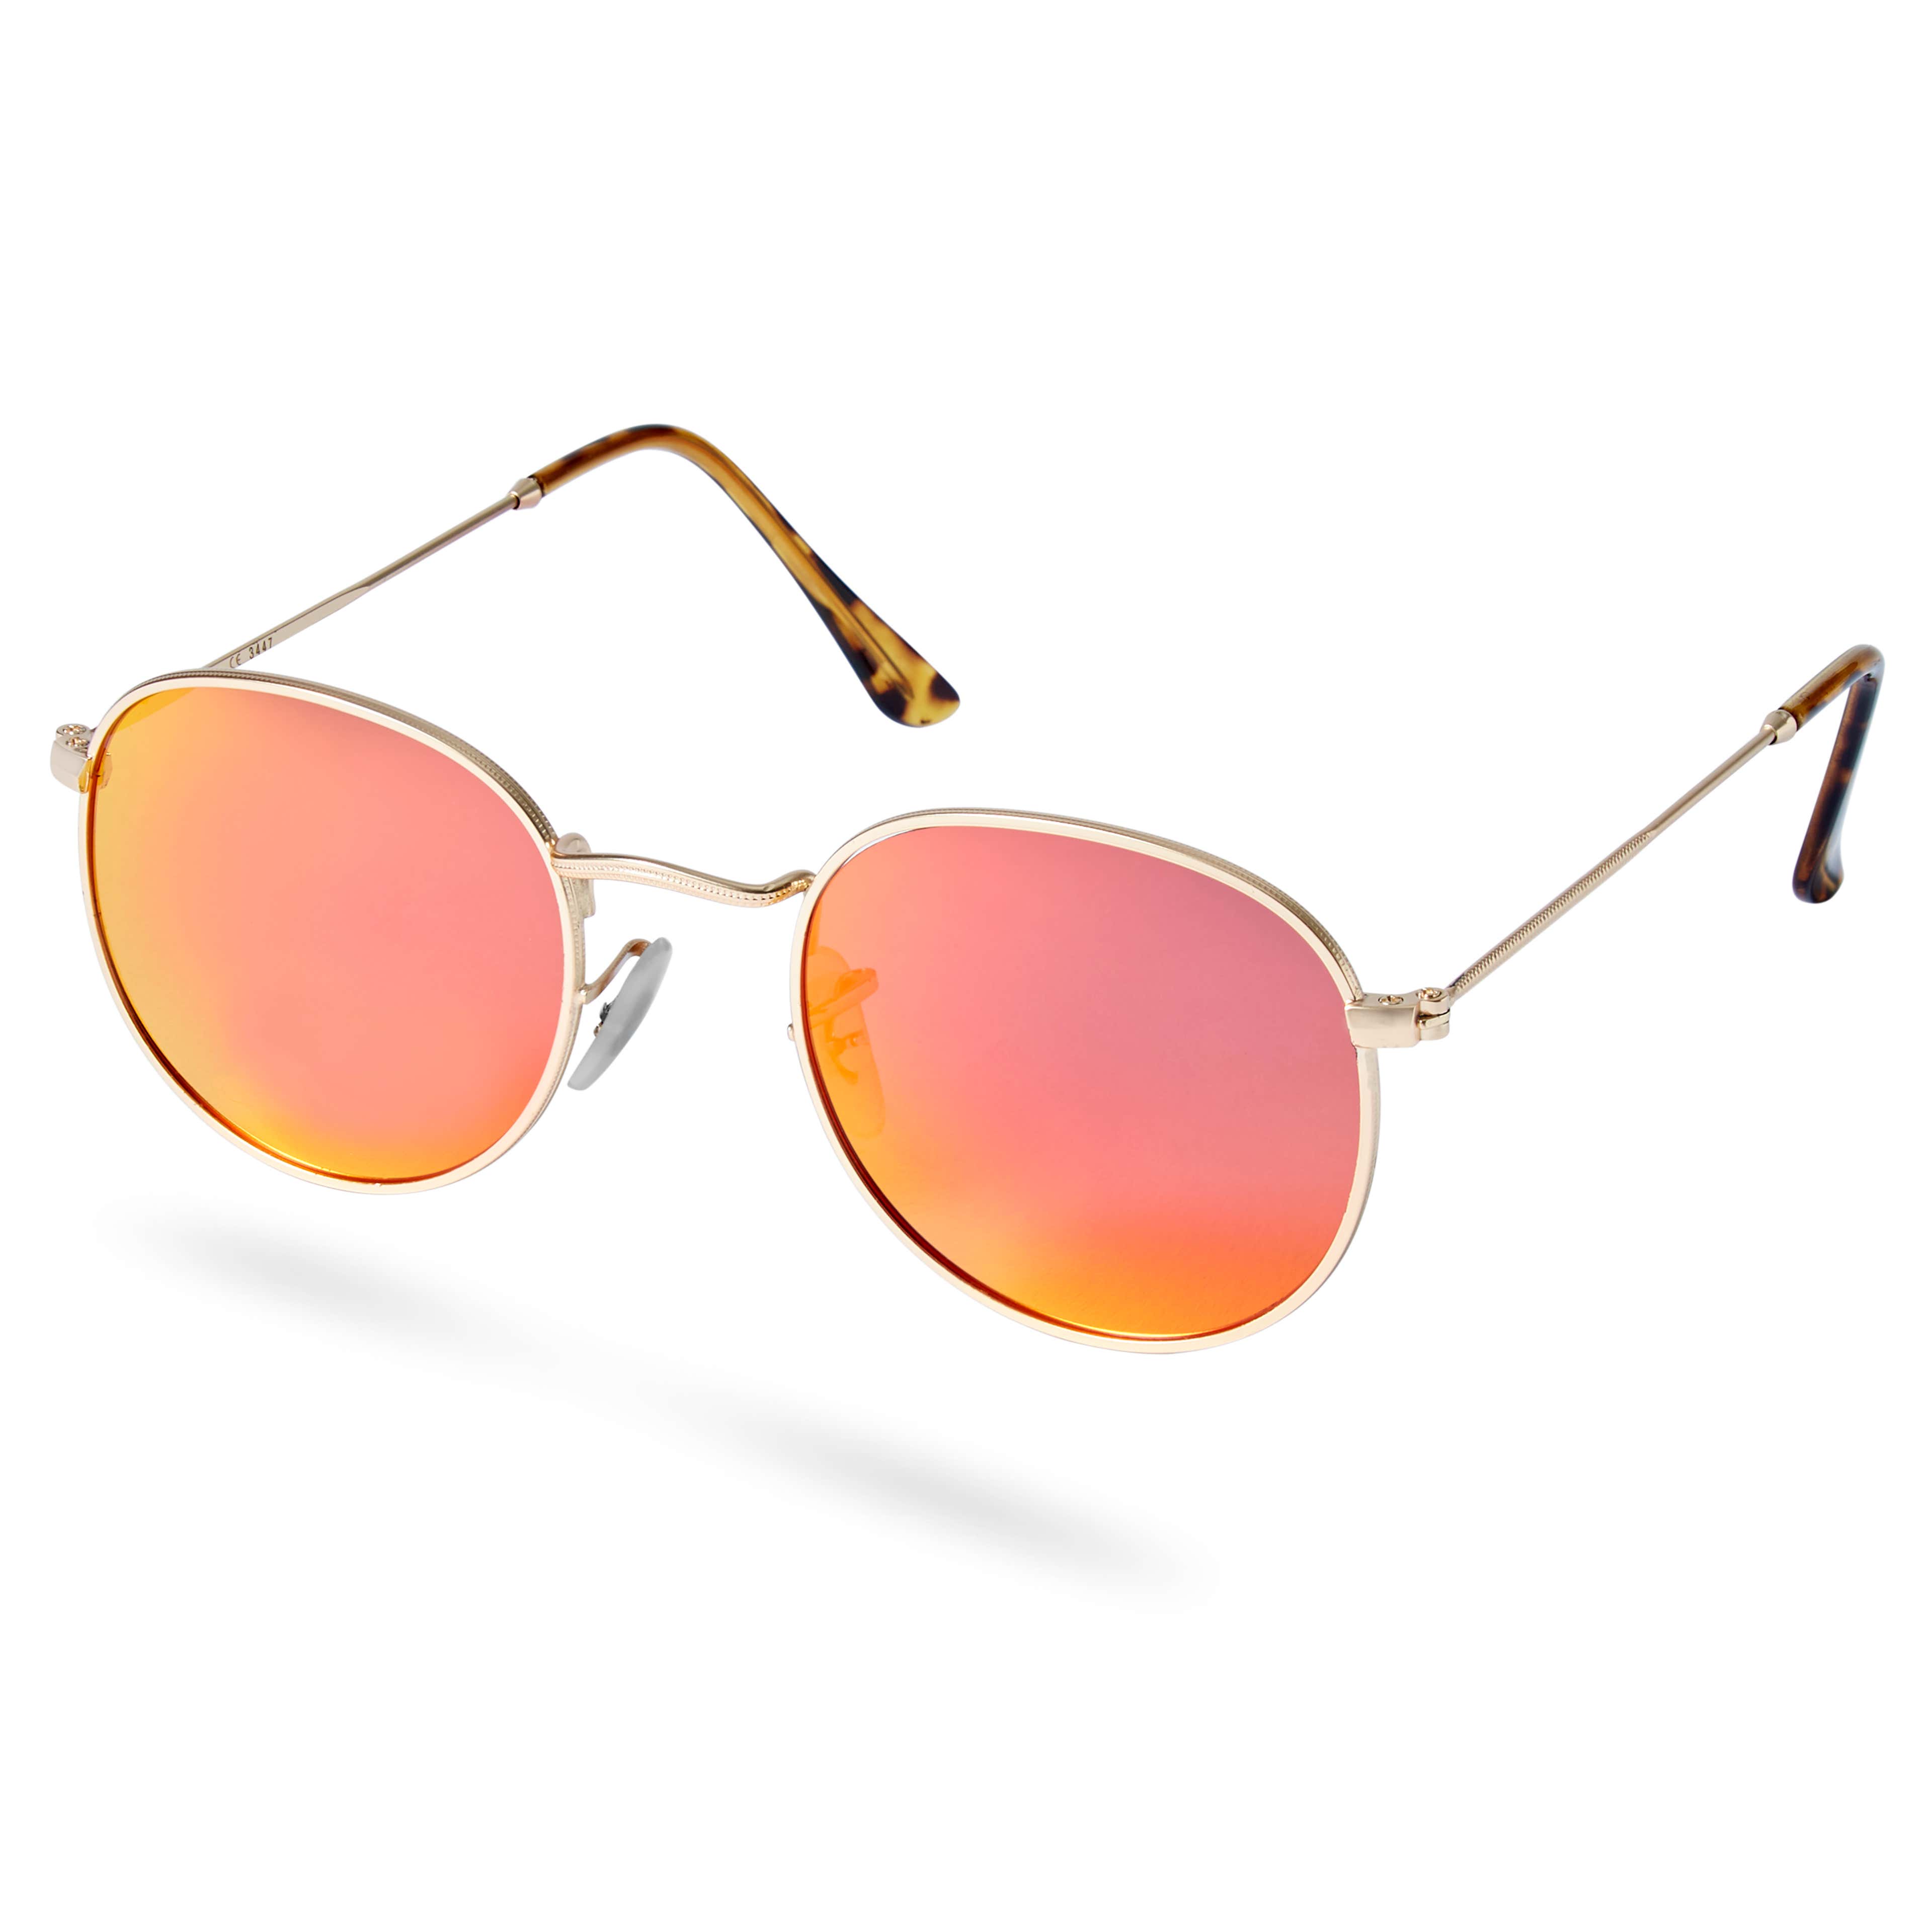 Dandy aranyszínű keretes, rózsaszín polarizált lencsés napszemüveg